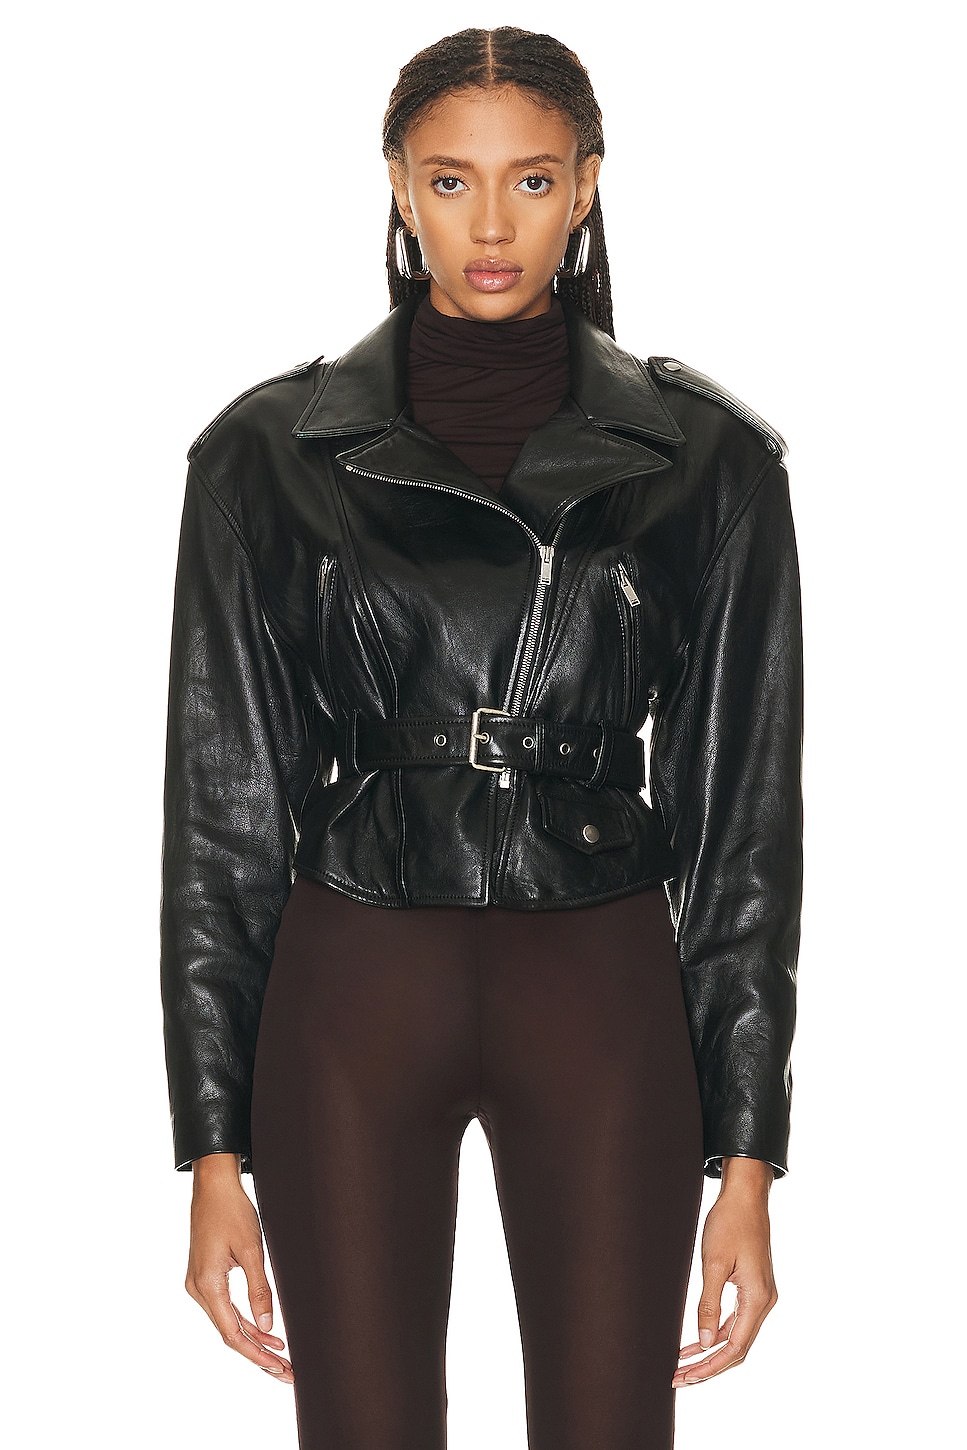 Saint Laurent Leather Jacket in Noir | FWRD